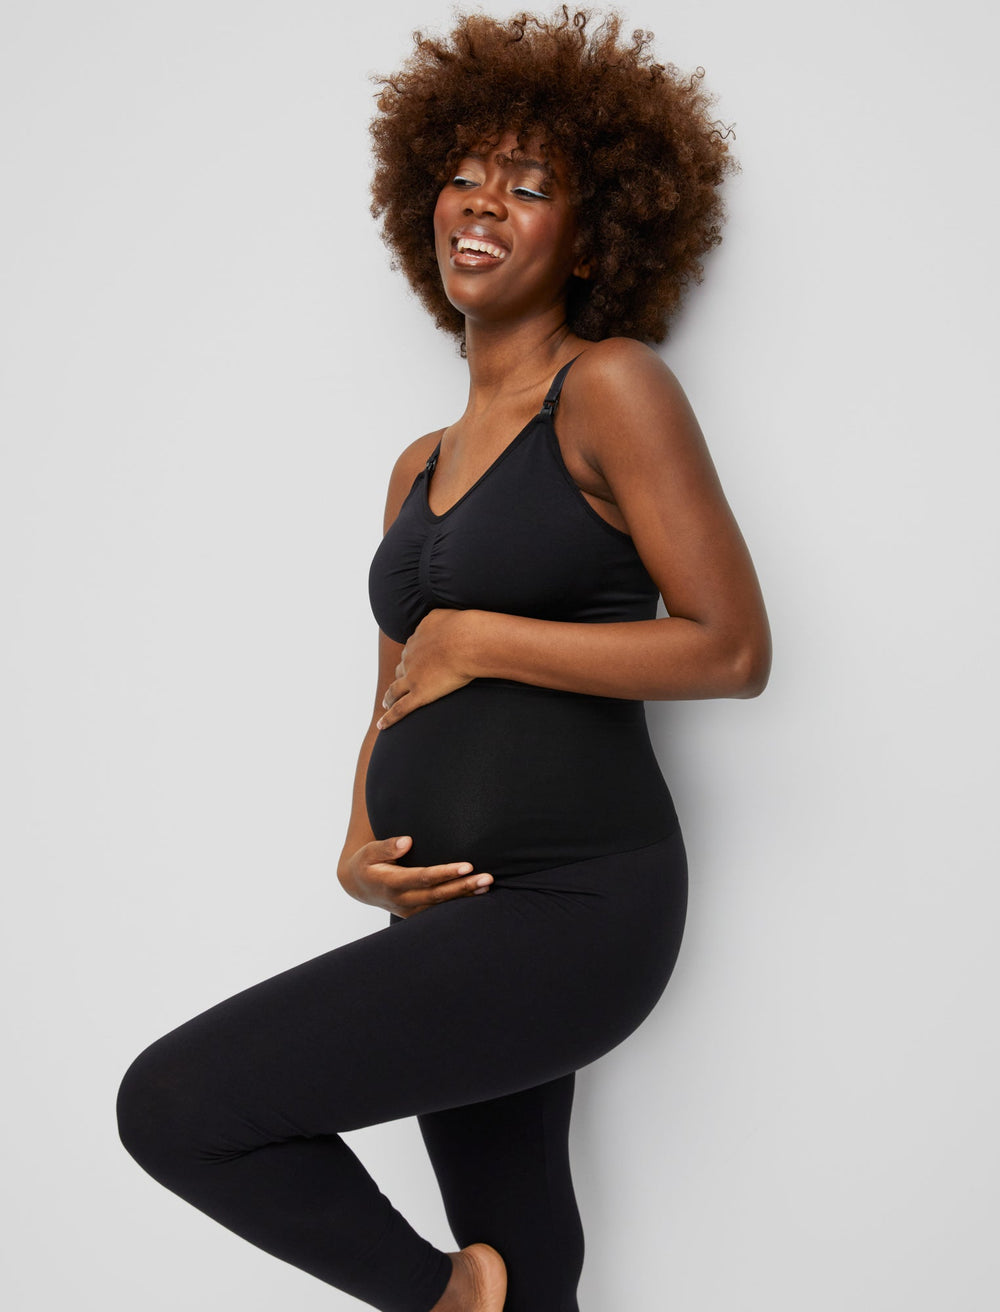 Essentials Women's Maternity Leggings, Black, Medium